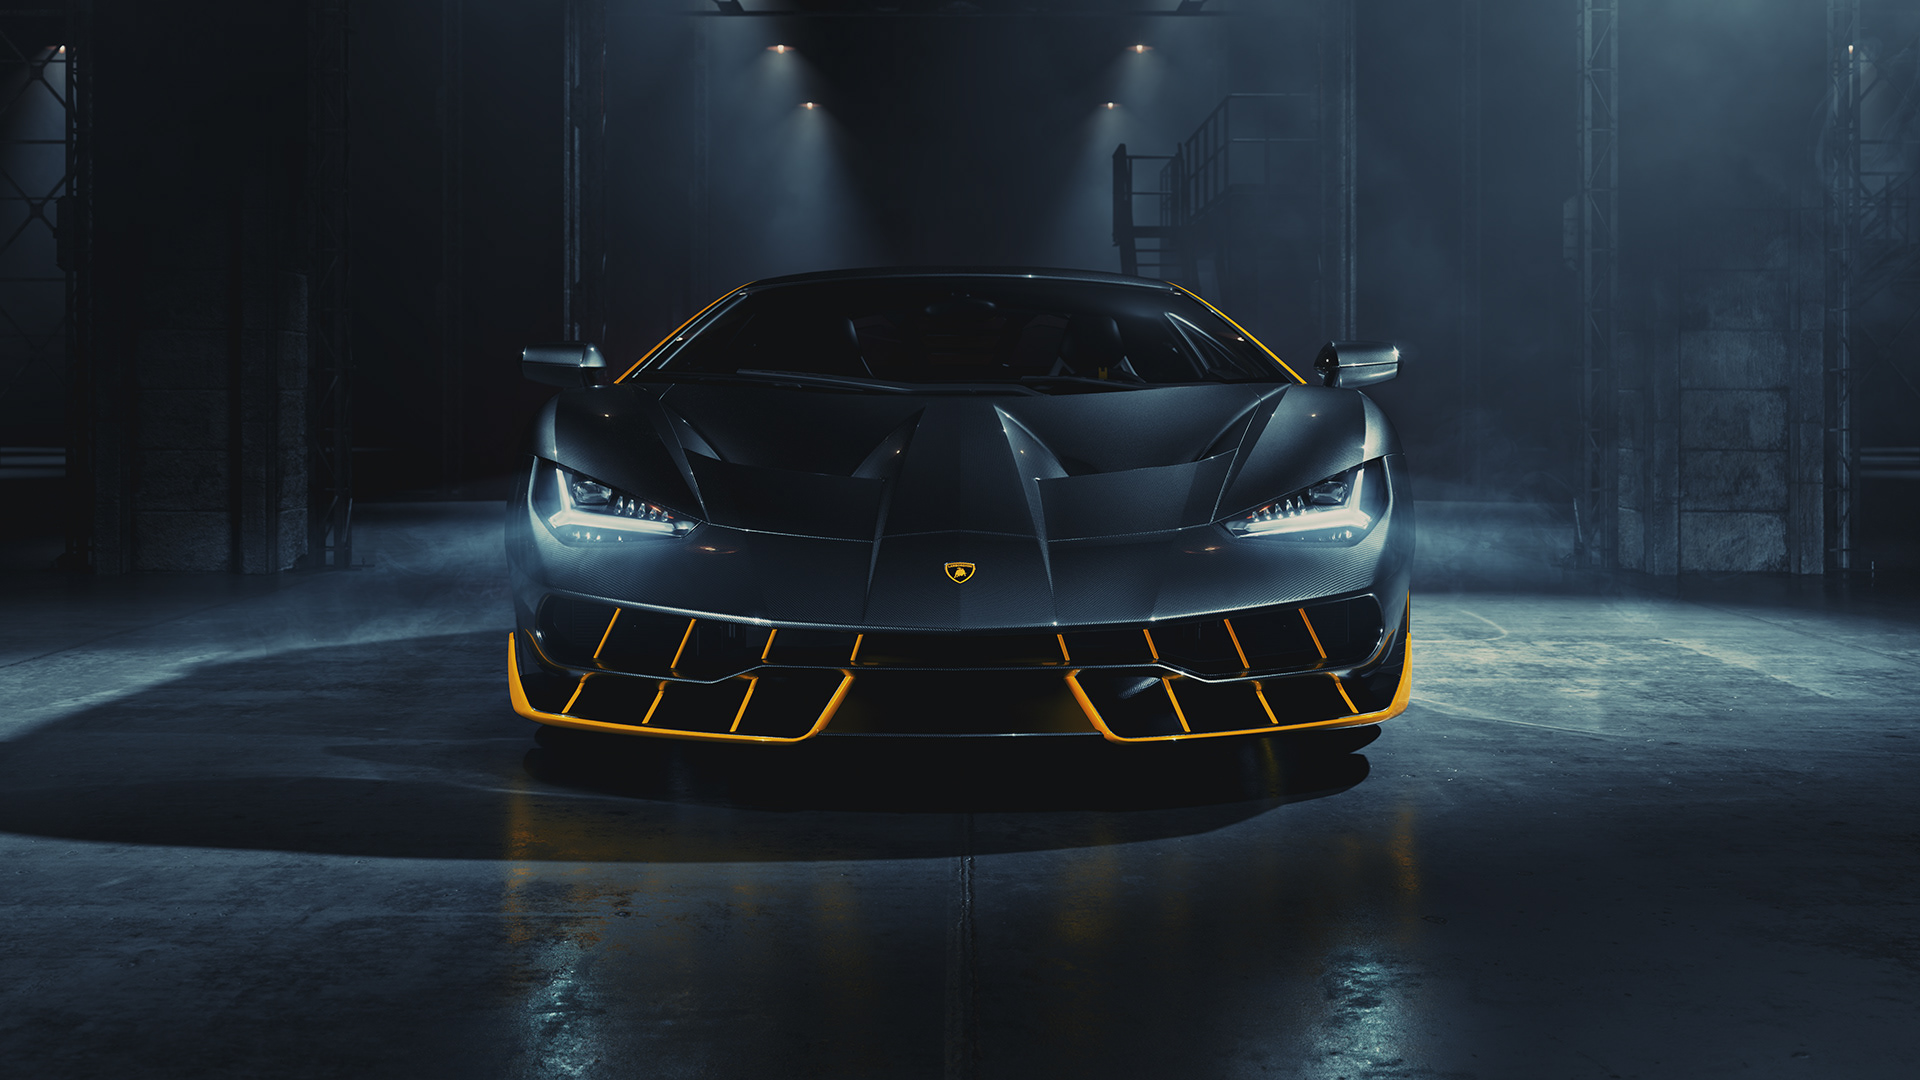 Lamborghini Centenario \u2013 Full CGI on Behance4b16f191477621.5e32d3fdba6a1.jpg